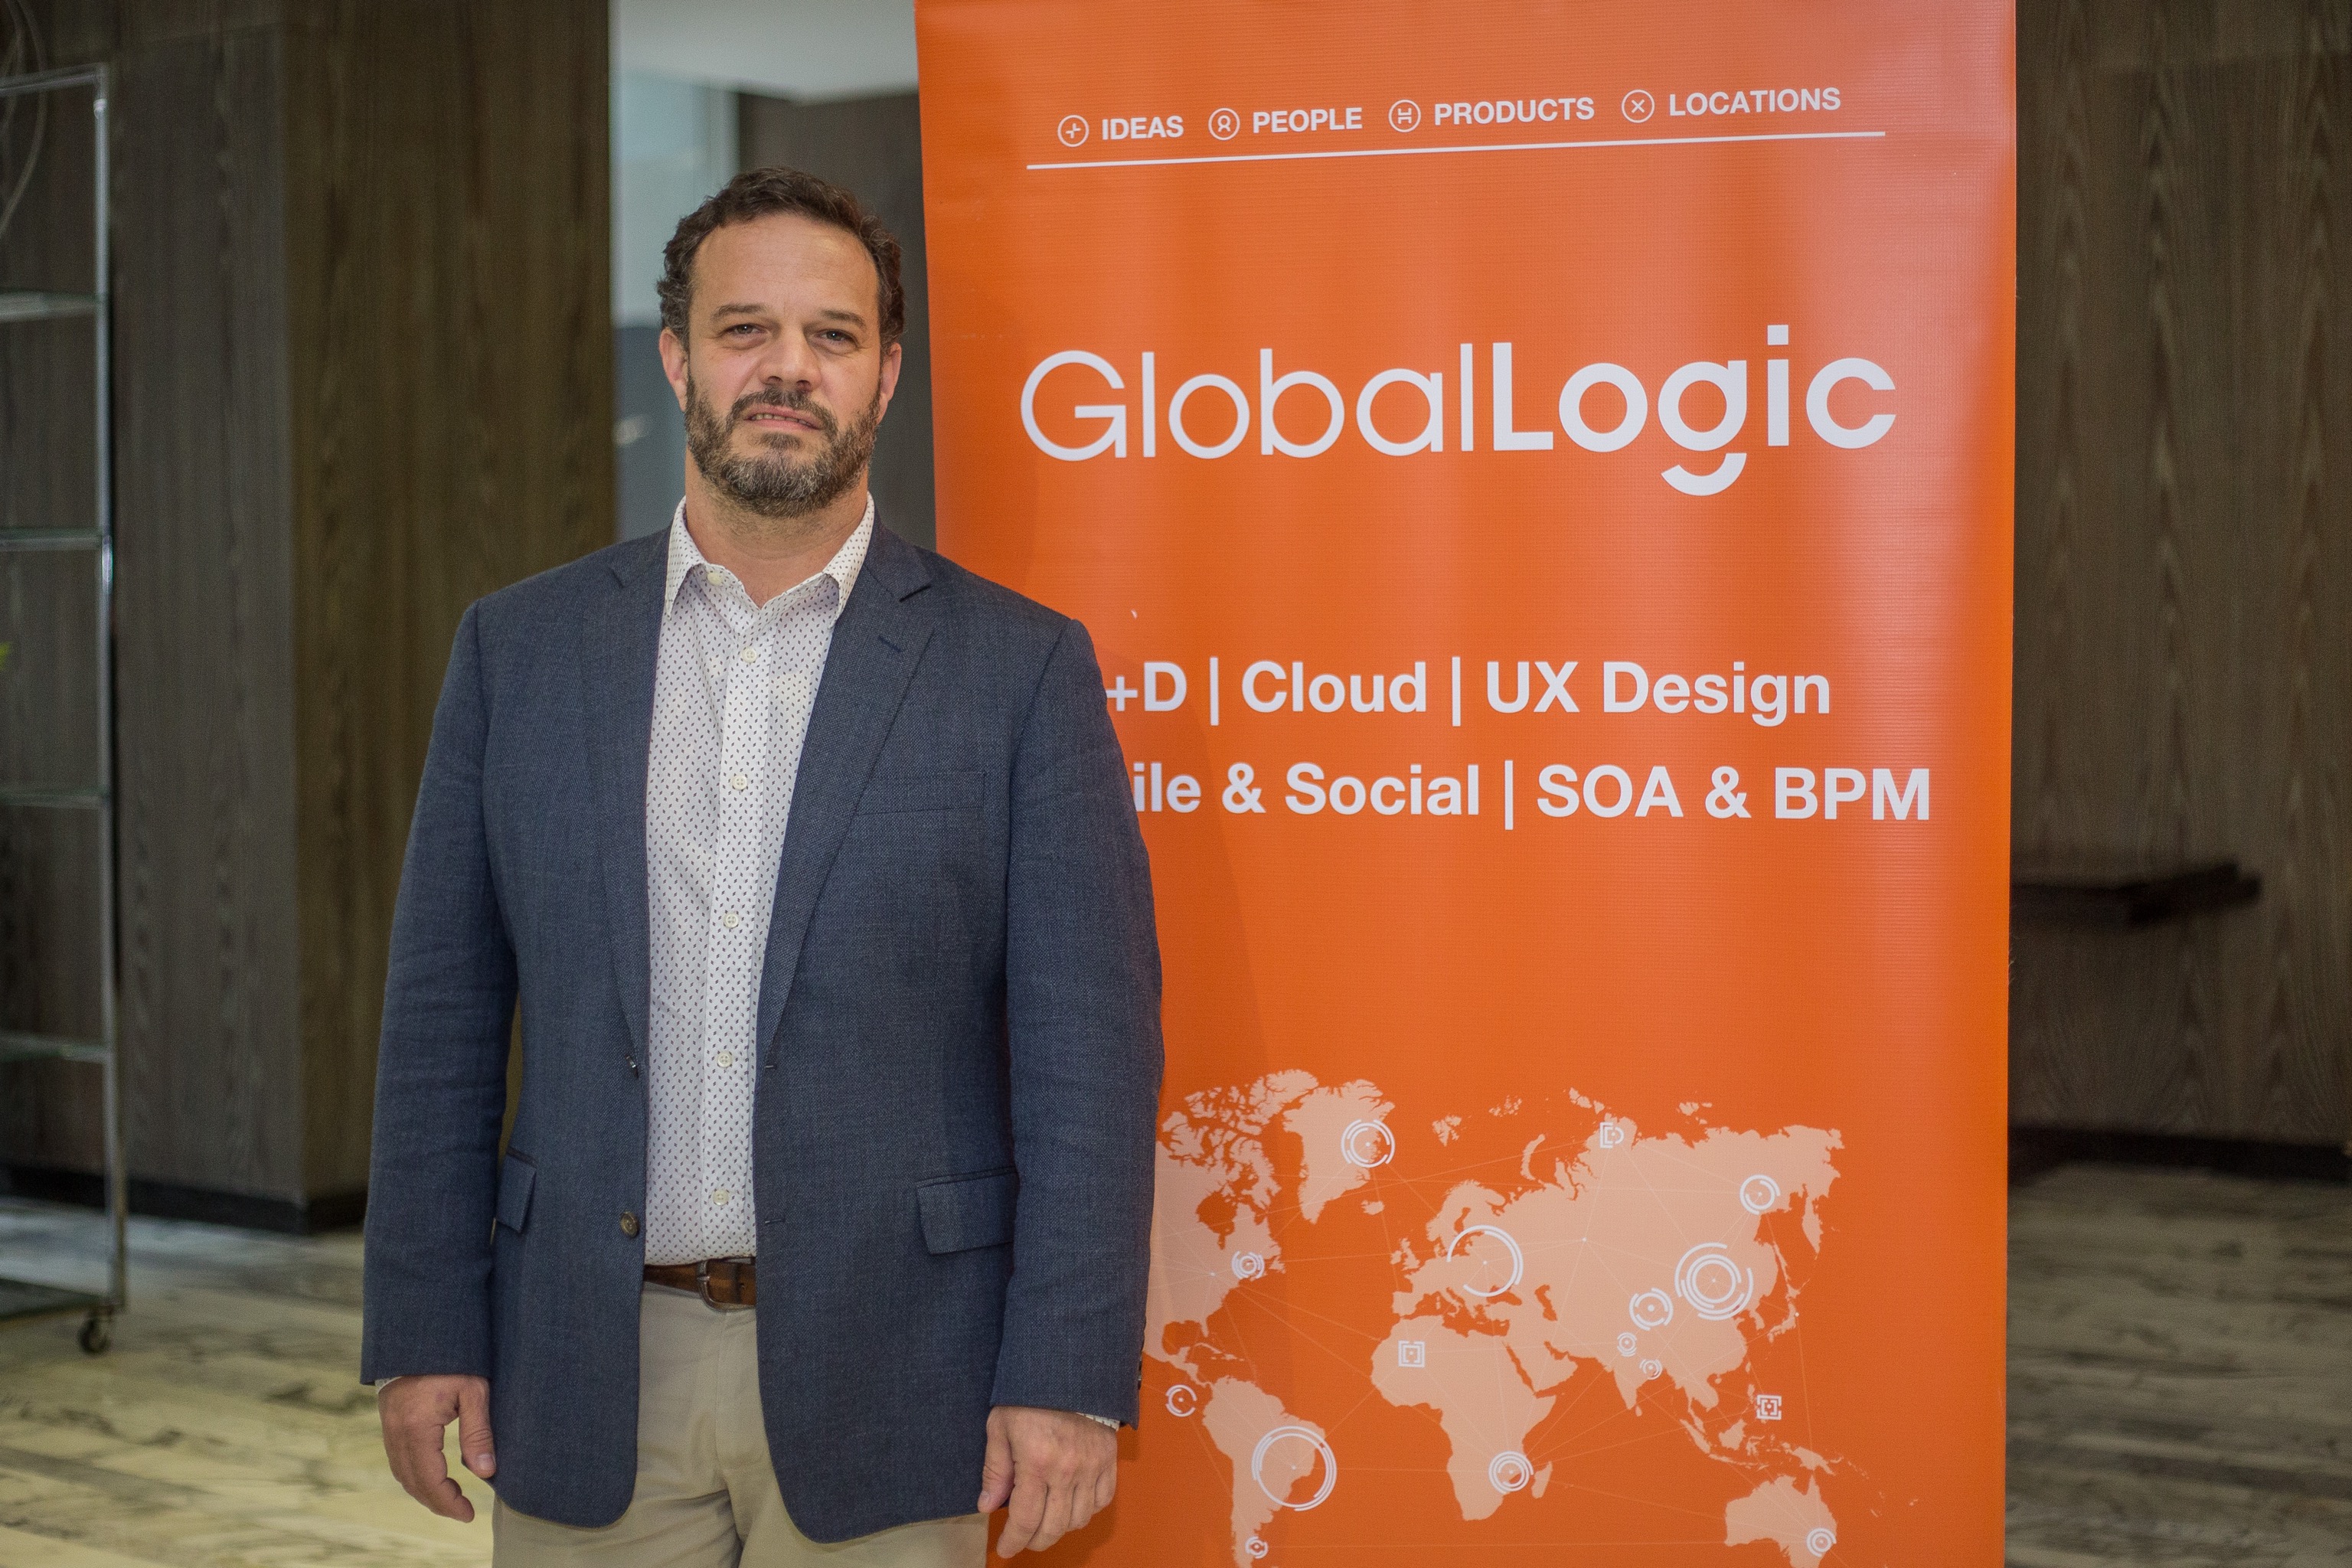 Juan-Bello-VP-Digital-Solutions-GlobalLogic-LATAM.jpg